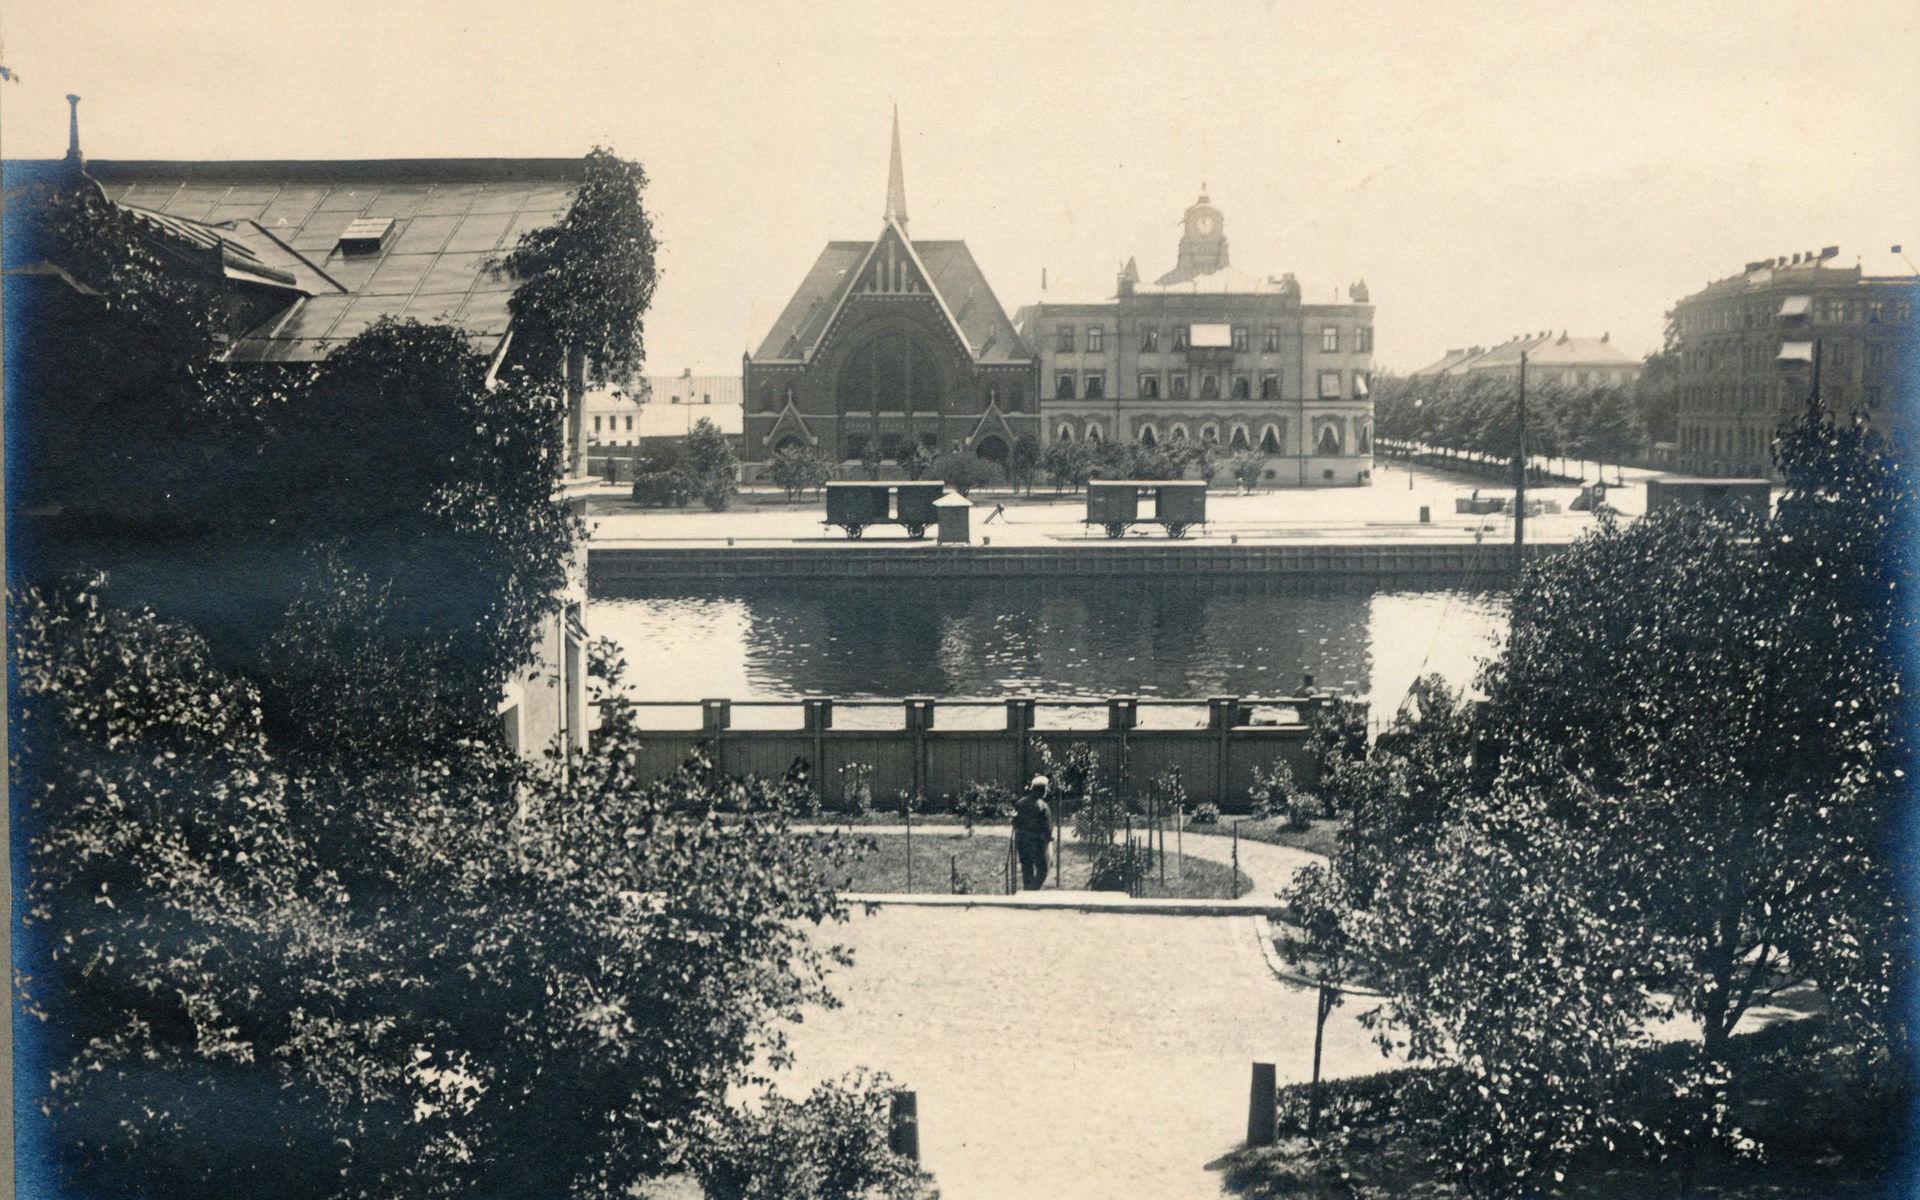 Trädgården – med en slående utsikt över Nissan. När Nils Boman på 1930-talet tog över Hotell Gillet (beläget i längan mot Kyrkogatan) fanns här en uteservering, som kom att bli en populär mötesplats för både hotellgäster och Halmstadbor.